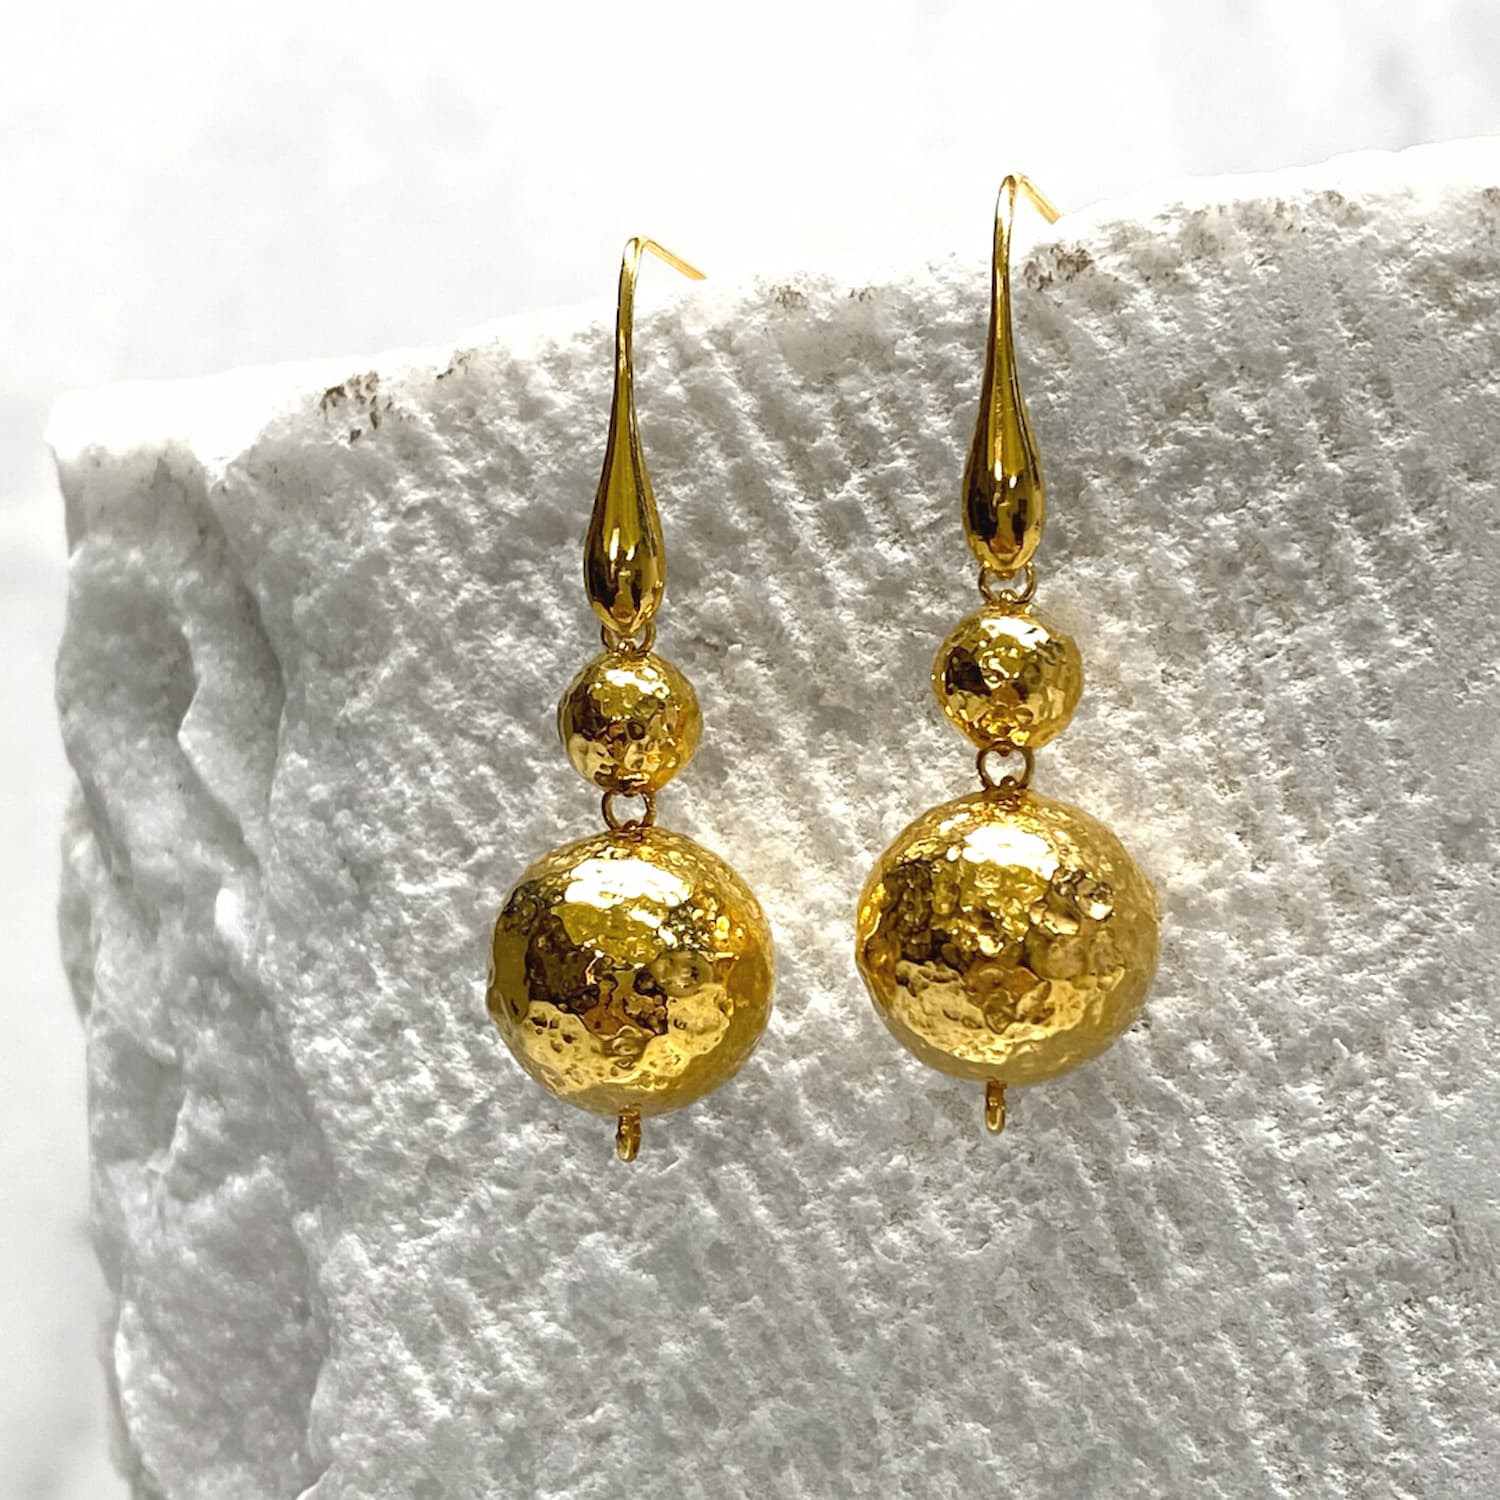 Sofia Earrings in Gold